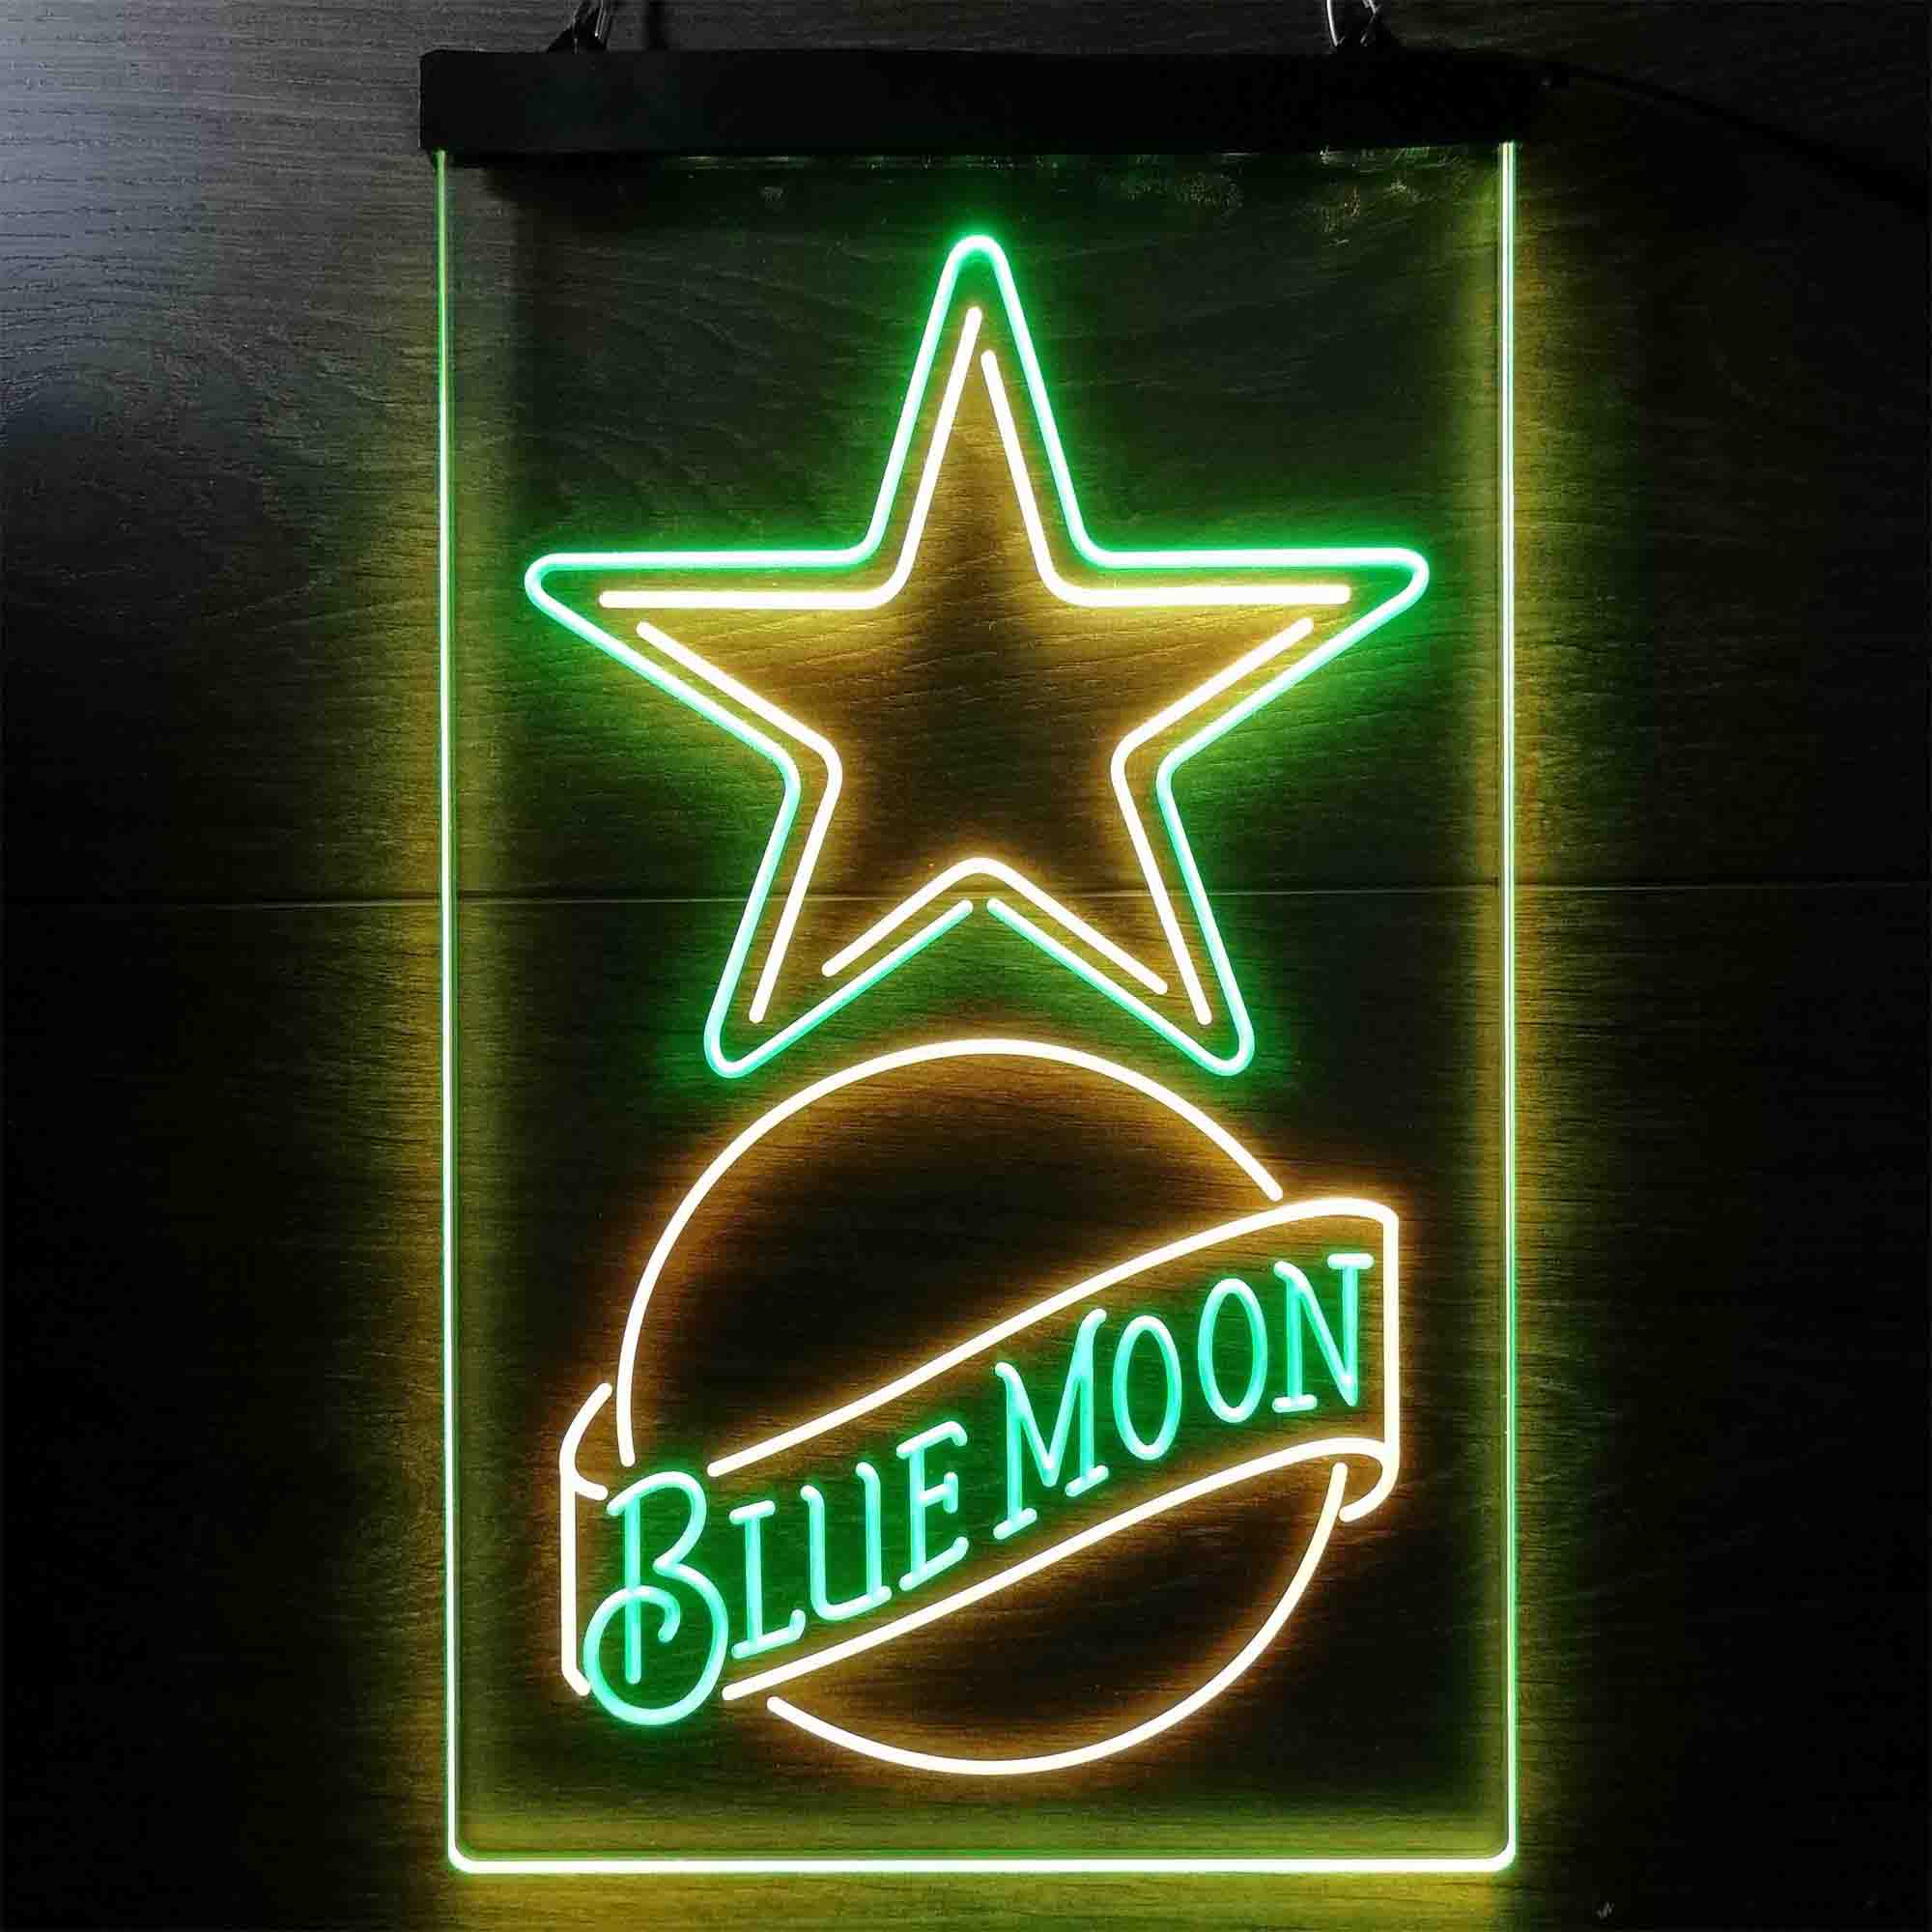 Blue Moon Bar Dallas Cowboys Est. 1960 LED Neon Sign